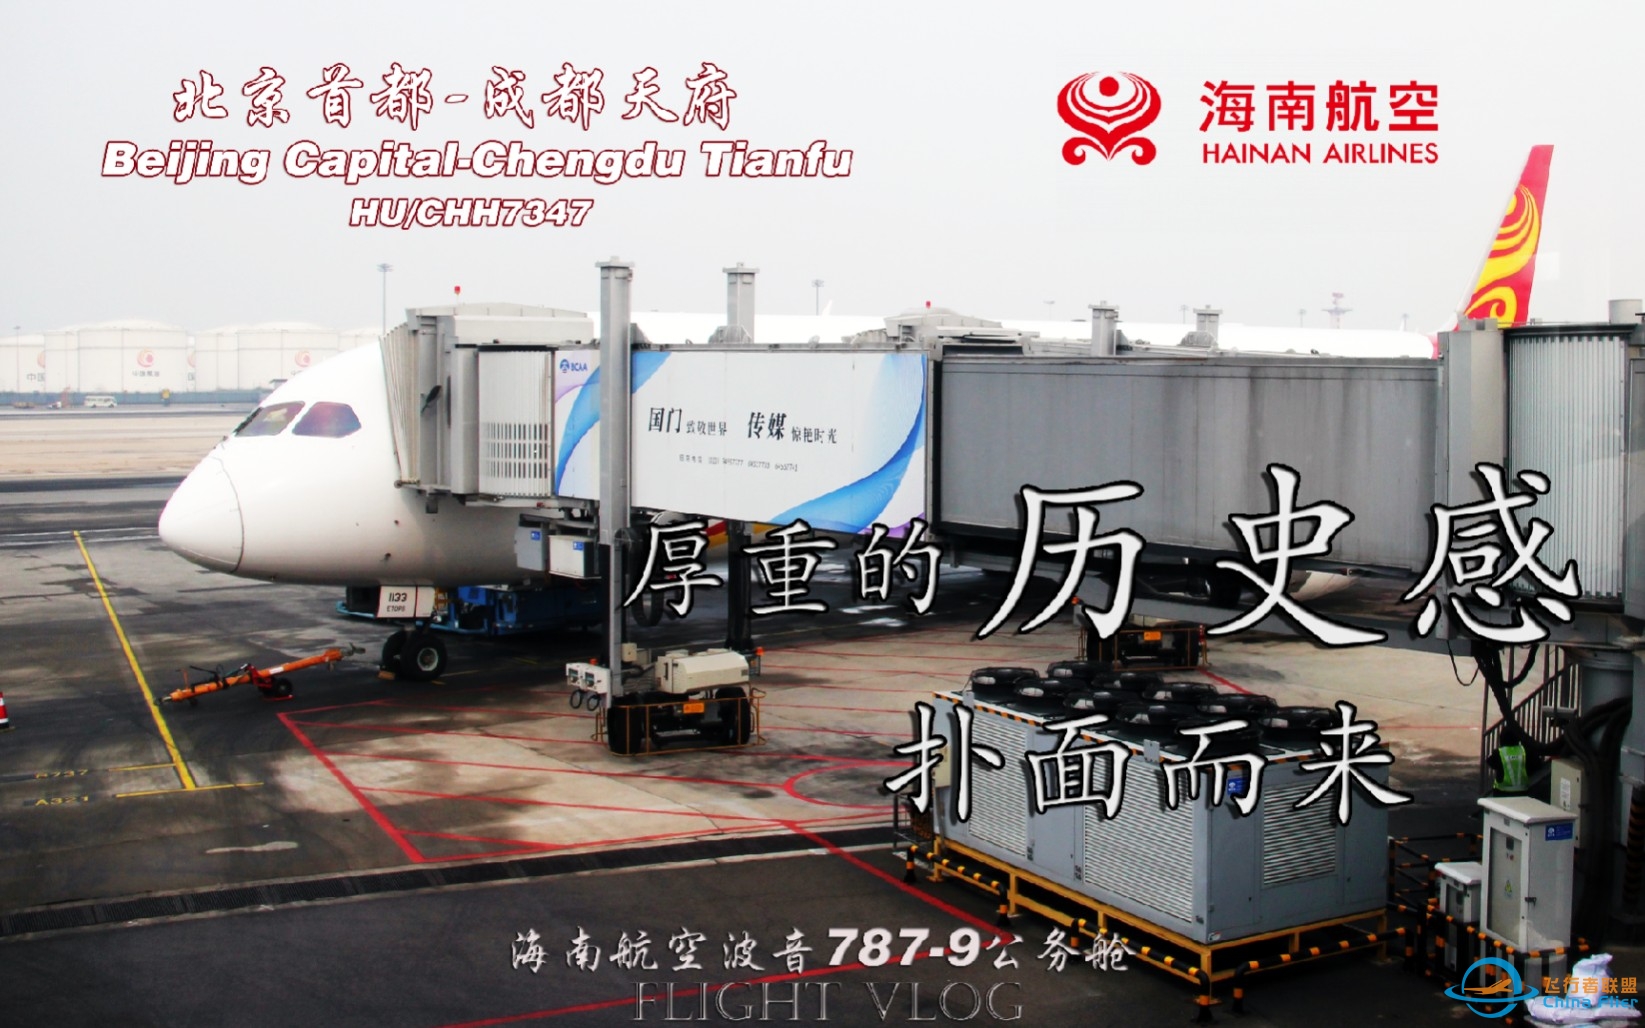 【航空Vlog】 仿佛回到了十年前！北京首都-成都天府 海南航空B787-9公务舱飞行体验-9394 